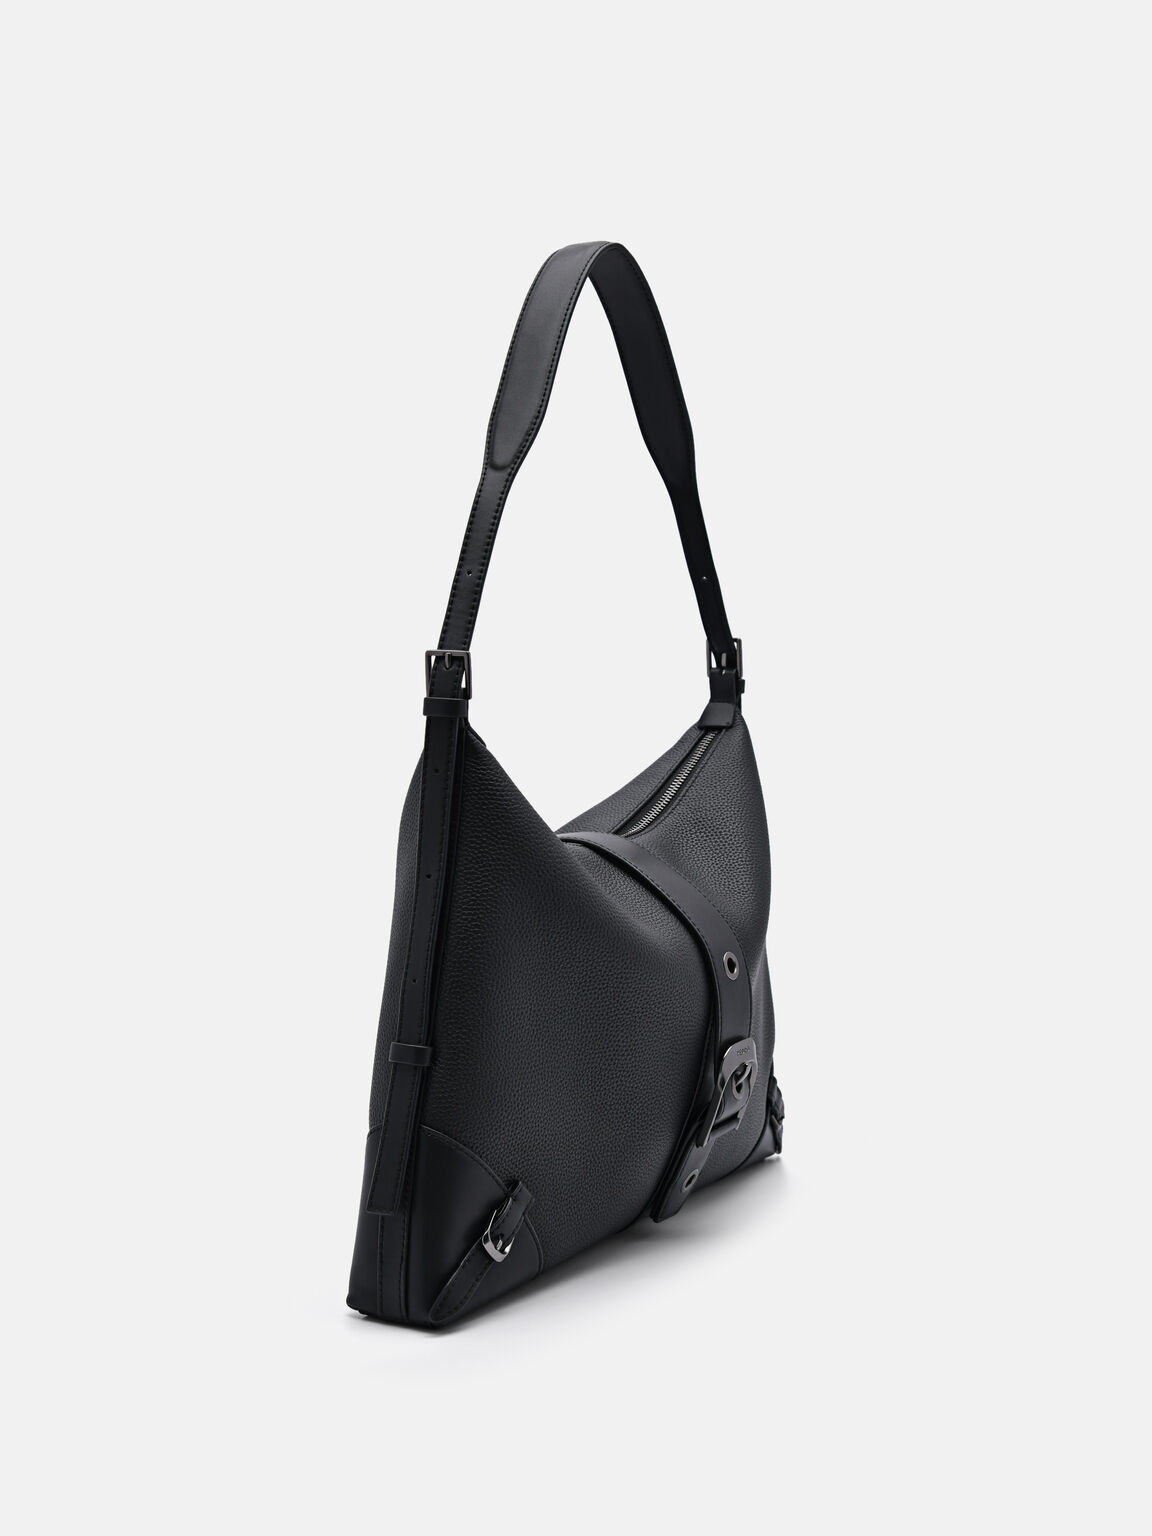 Helix Leather Hobo Bag, Black